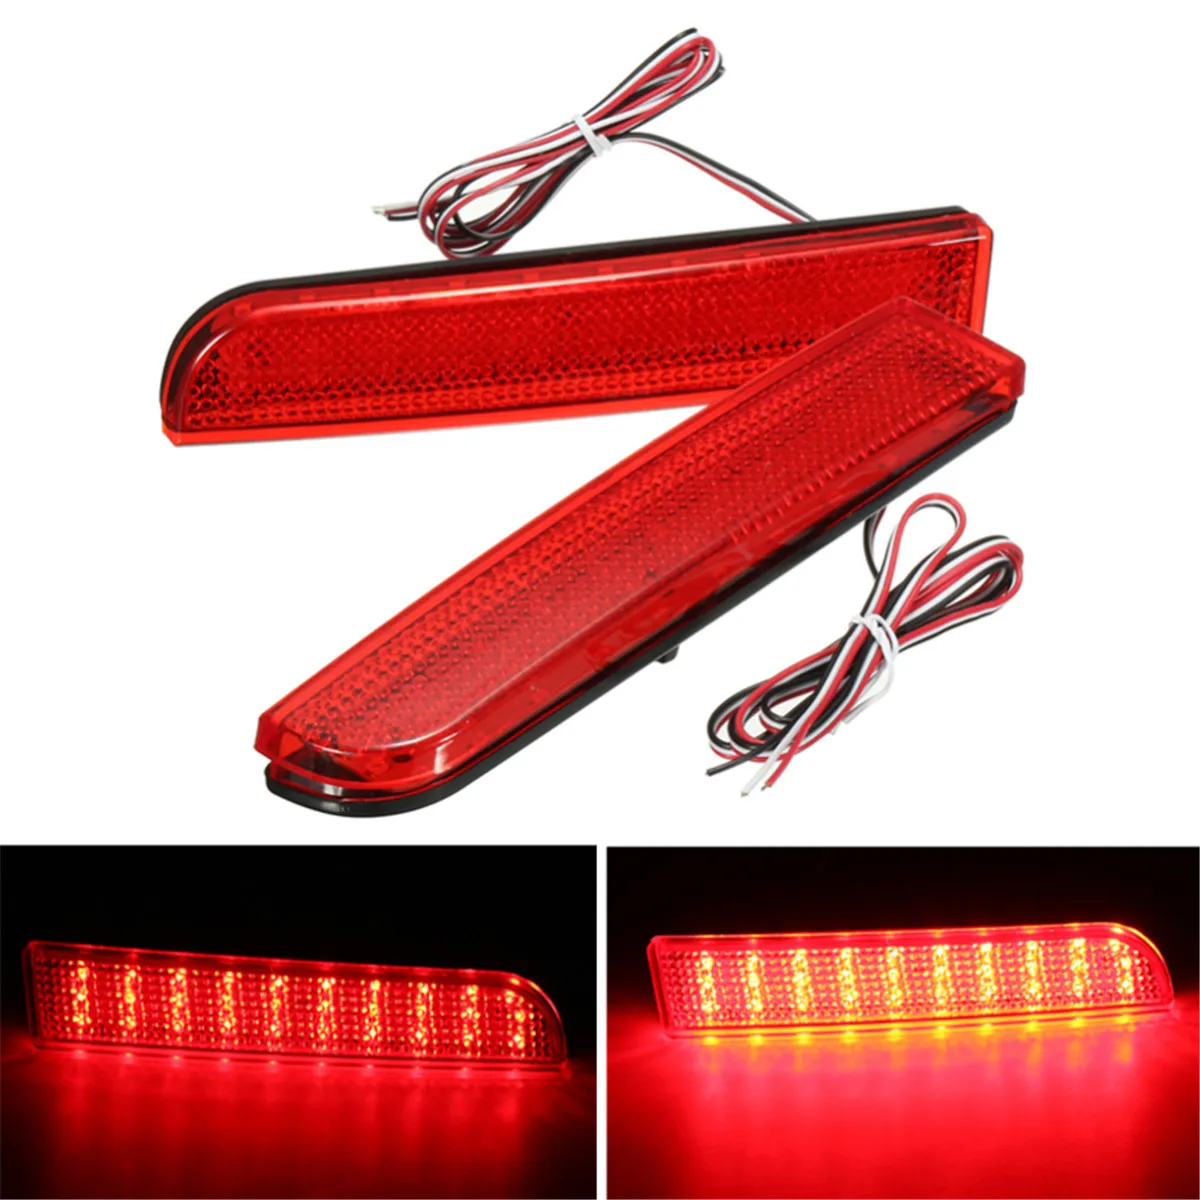 Пара 30 светодиодный задний бампер автомобиля отражатель задний тормоз Стоп ходовой светильник лампы для Mitsubishi Lancer 2008 - Цвет: Красный